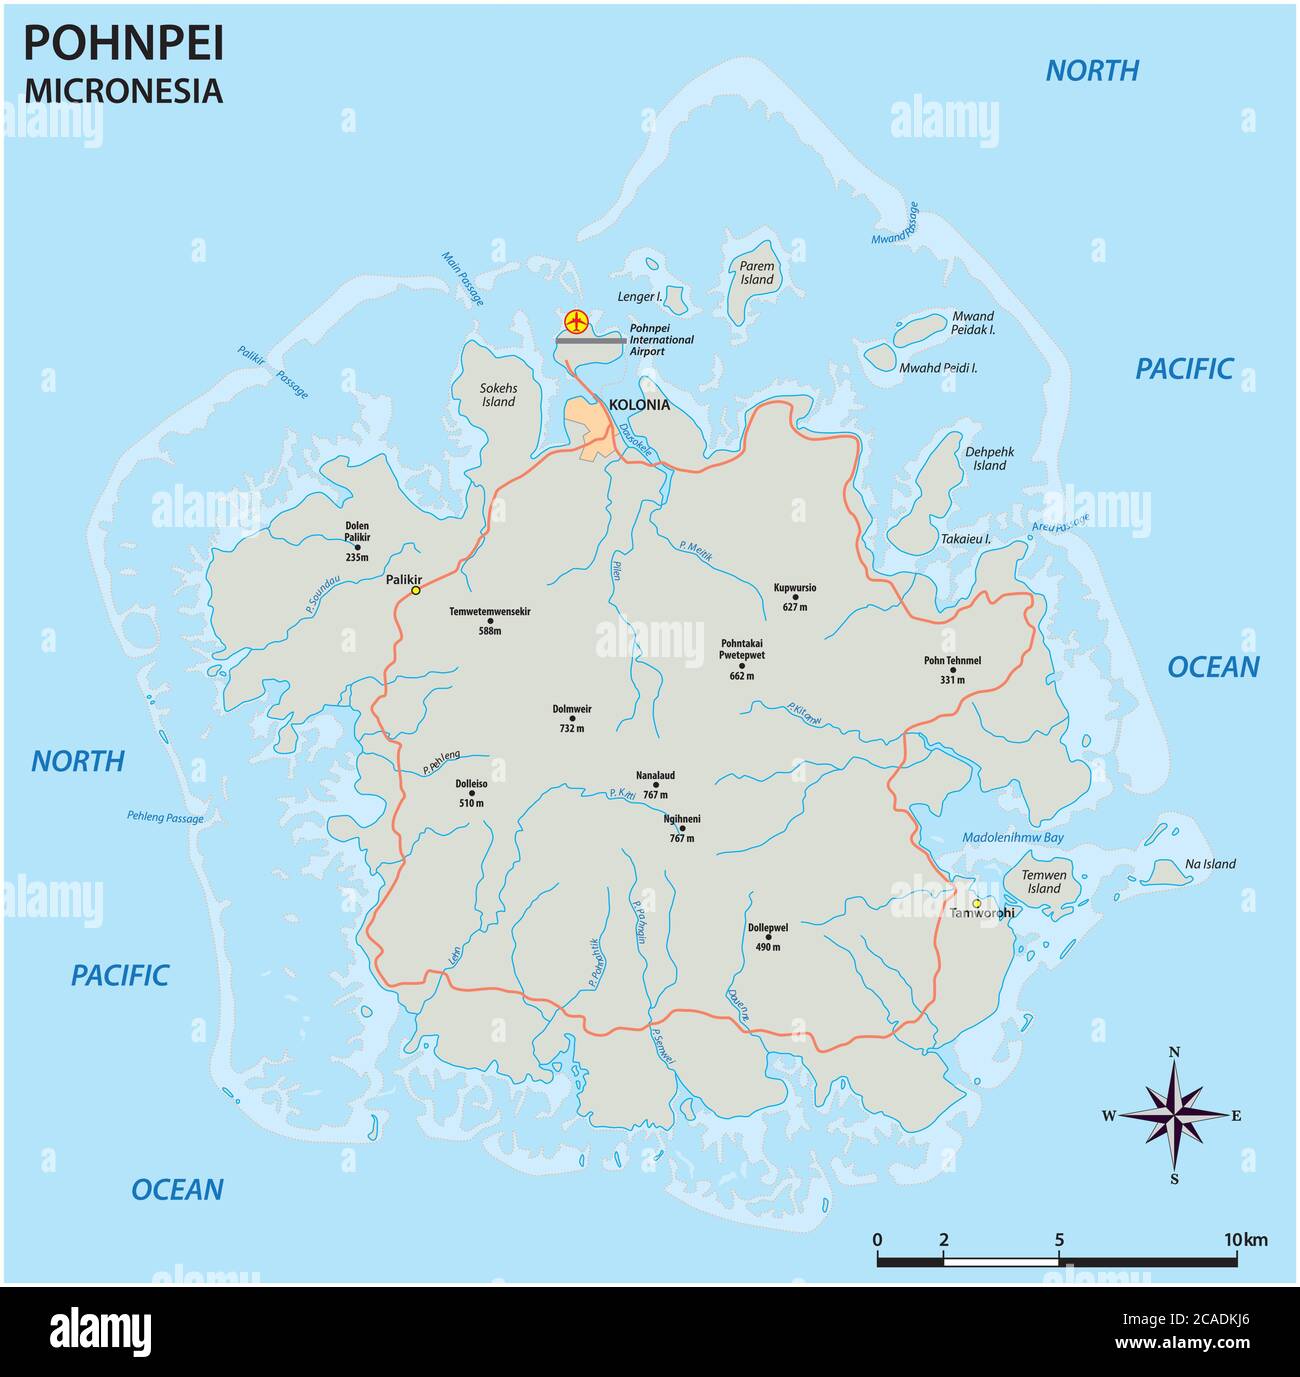 Carte routière vectorielle de la principale île micronésienne de Pohnpei Illustration de Vecteur